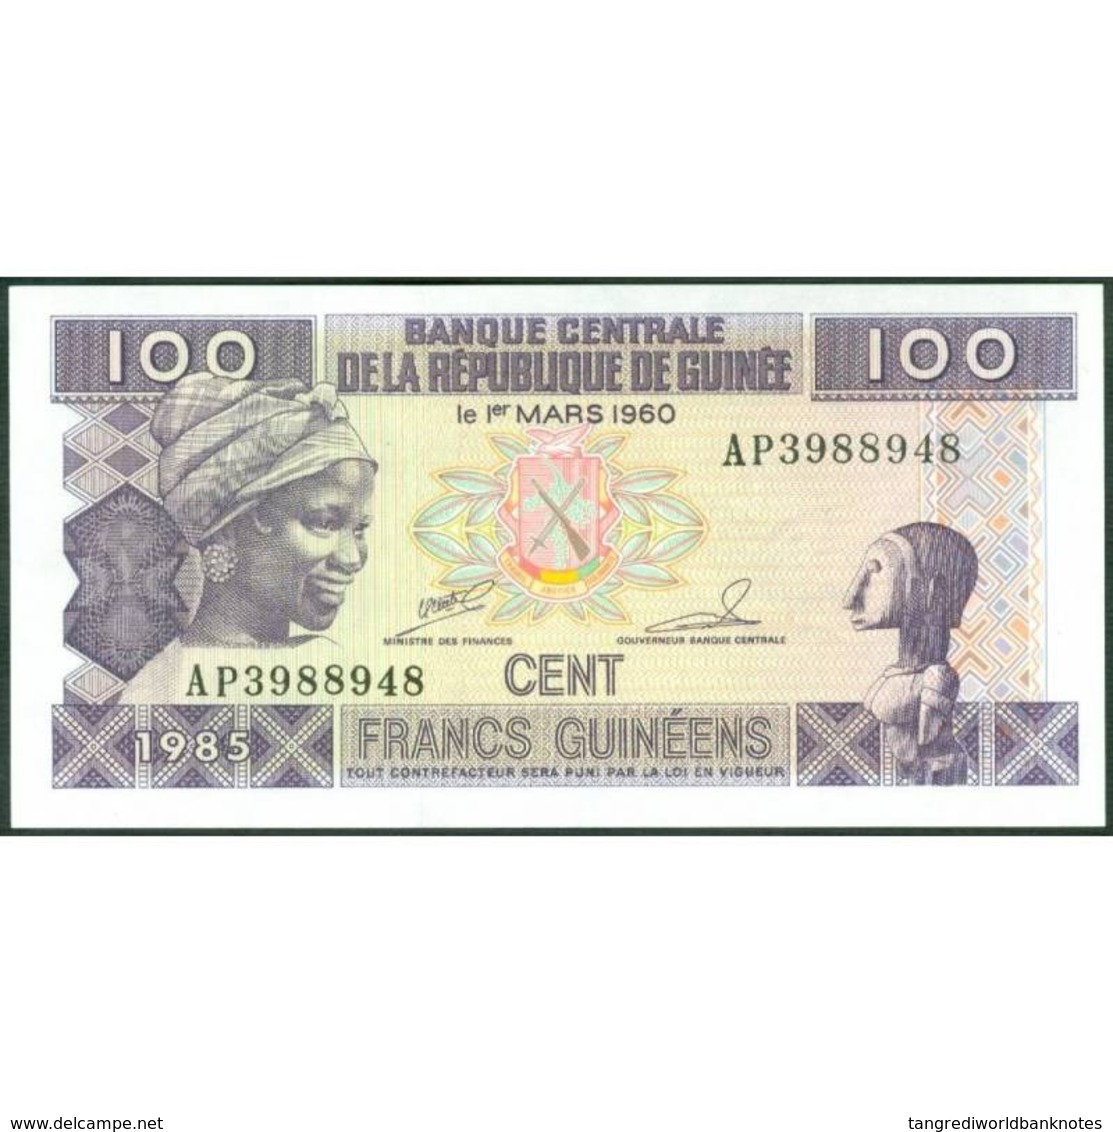 TWN - GUINEA 30a2 - 100 Francs 1985 Prefix AP﻿ - Without Serifs﻿ UNC - Guinea